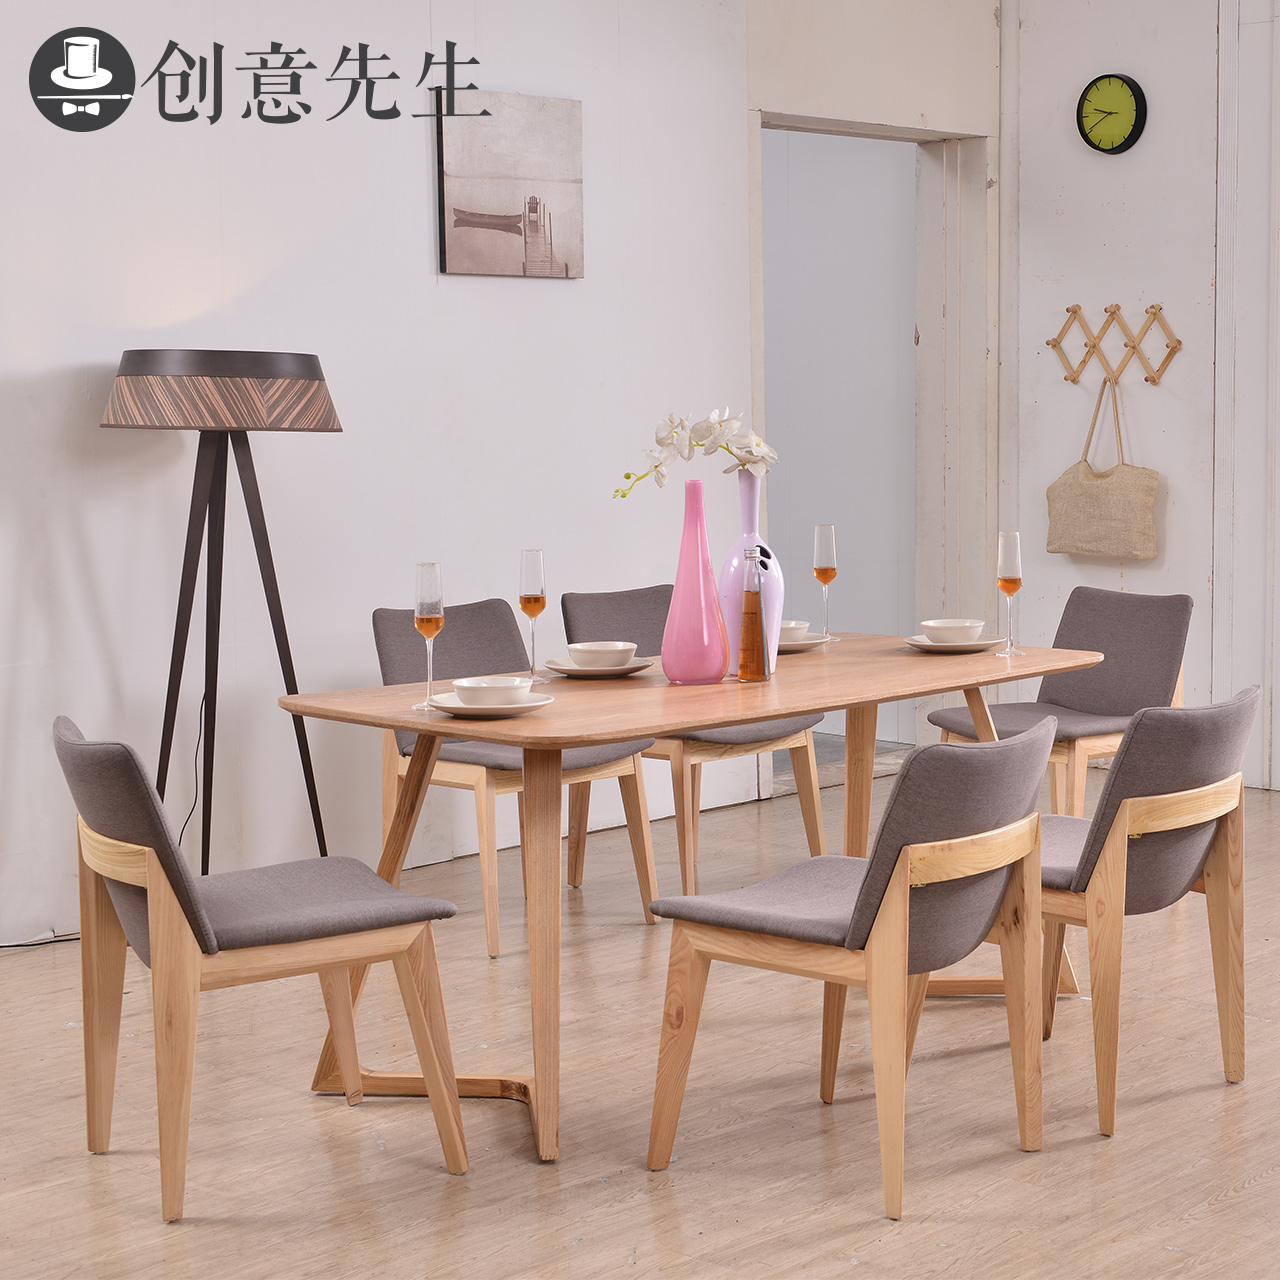 创意先生北欧实木餐桌椅组合胡桃木色日式餐桌简约现代个性客厅